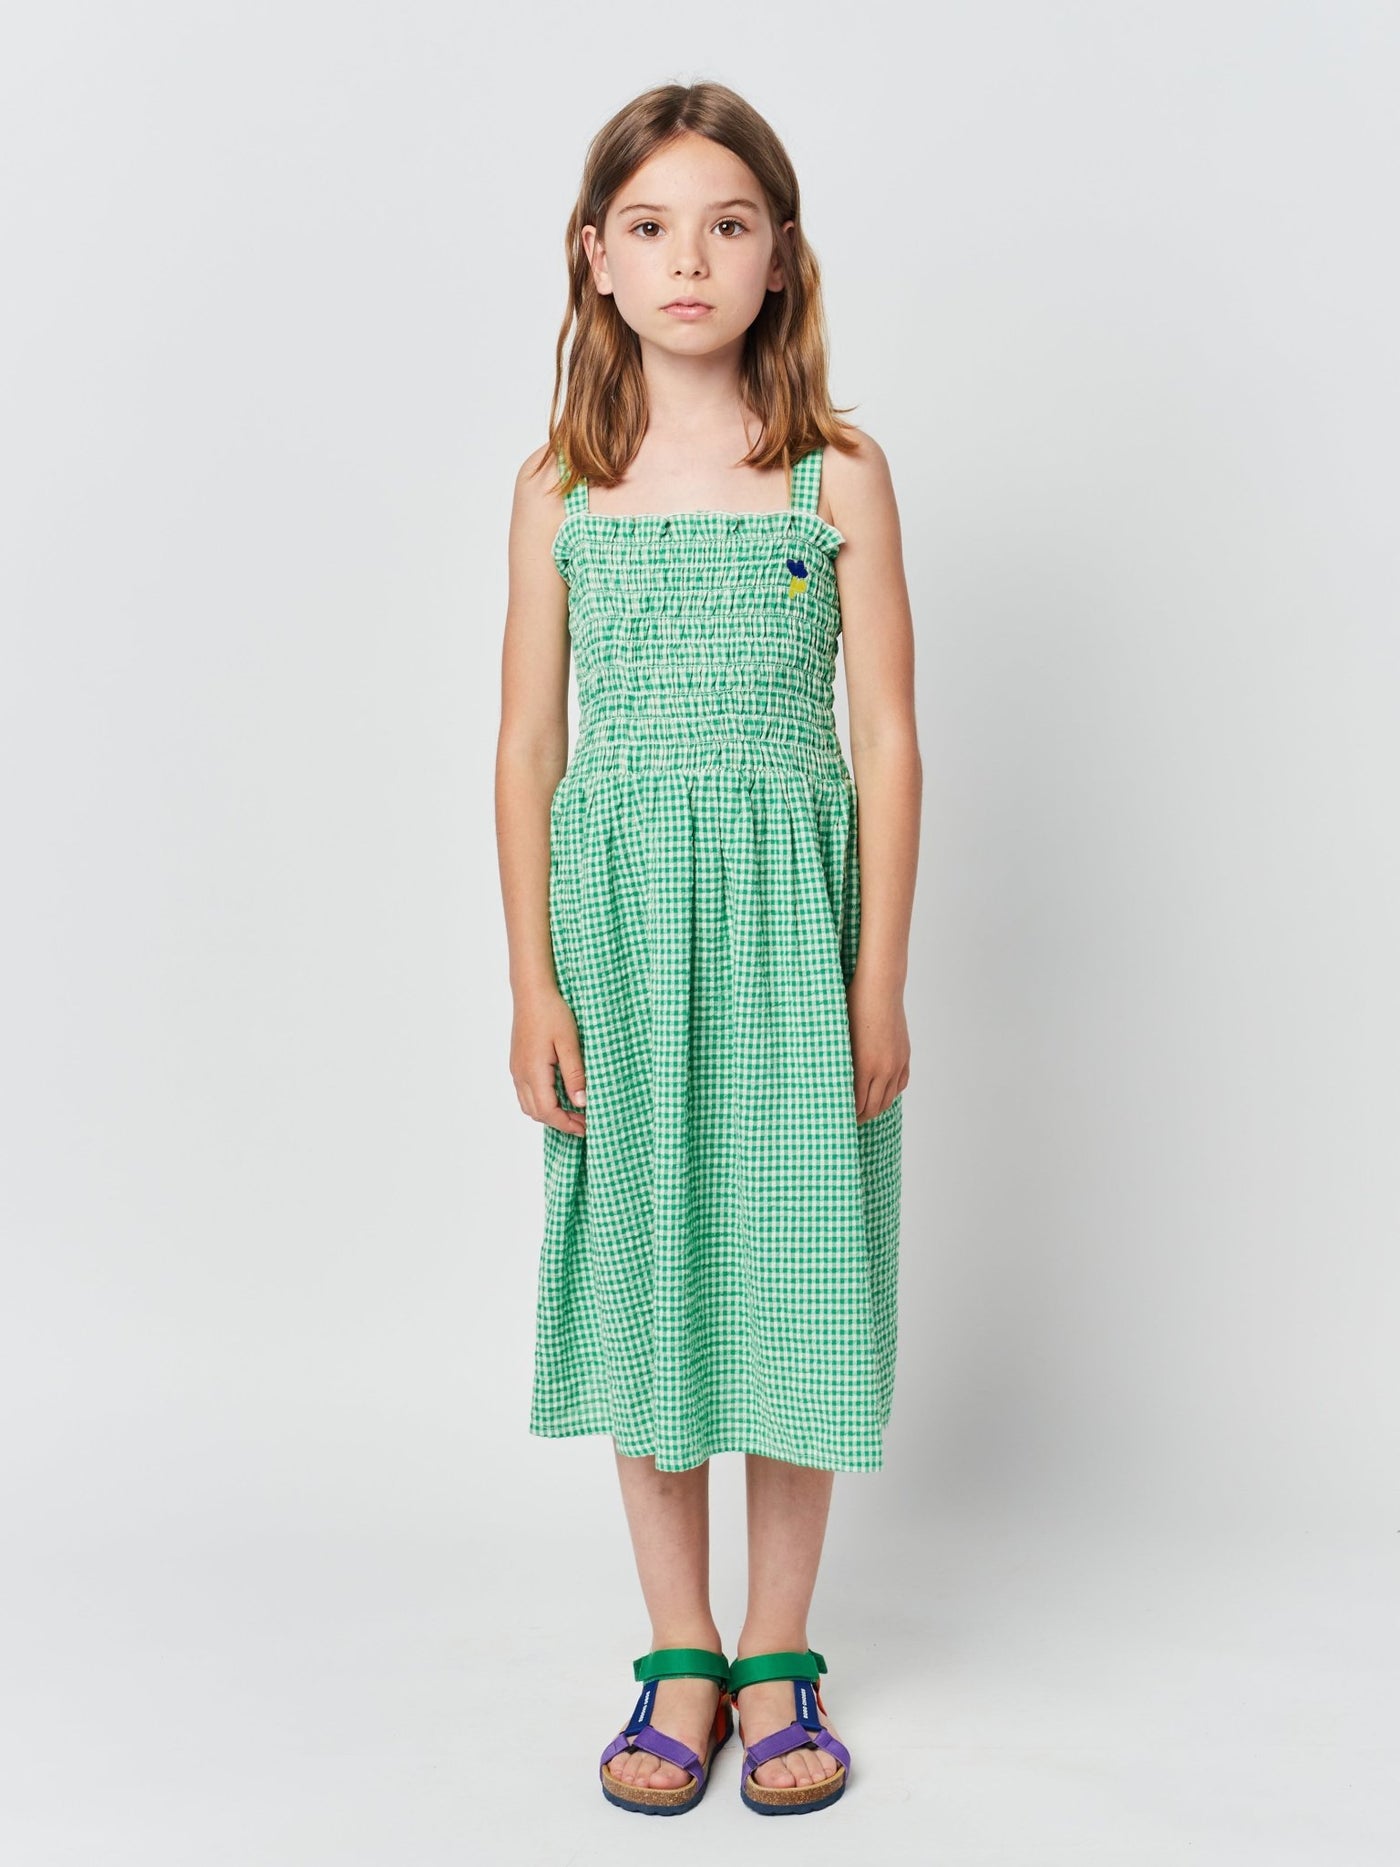 Green Vichy Strap Dress by Bobo Choses - Petite Belle